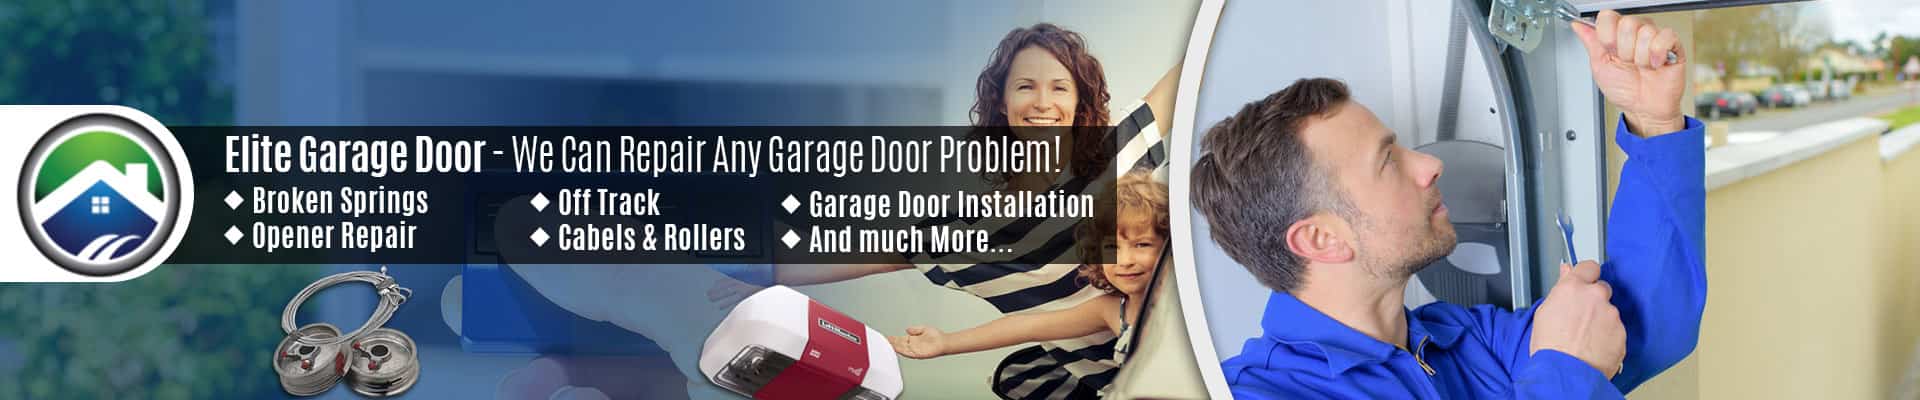 Garage Door Repair Service Arlington – Elite Garage Door of Oak Harbour